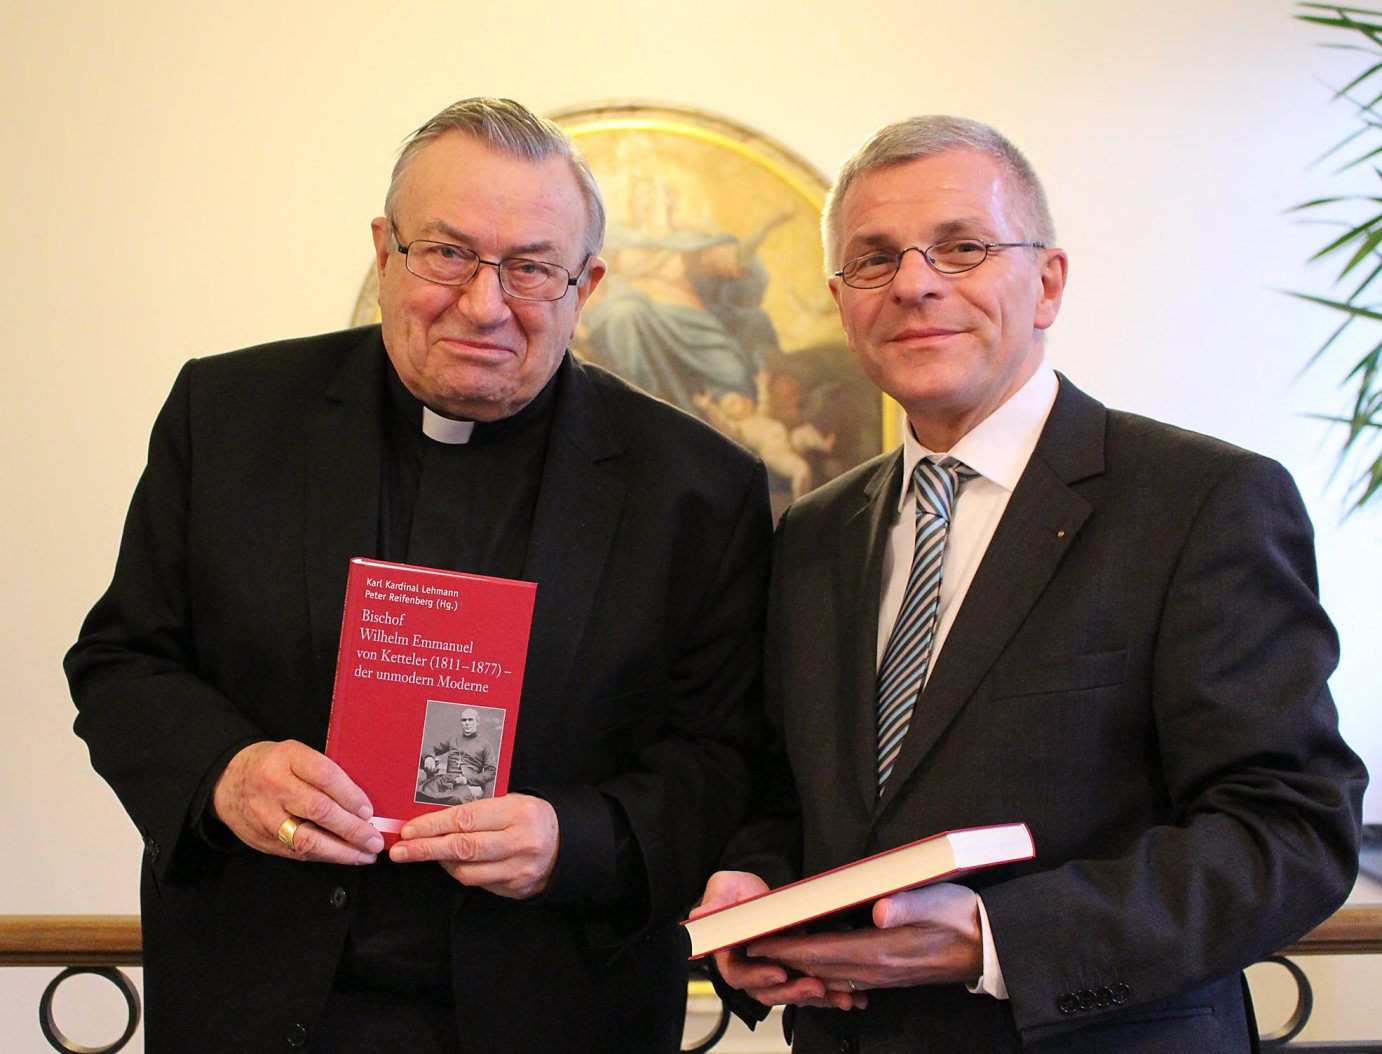 Mainz, 21. Januar 2014: Kardinal Karl Lehmann und Professor Dr. Peter Reifenberg (rechts) präsentierten das neu erschienene Buch zu Bischof Ketteler. (c) Bistum Mainz / Blum